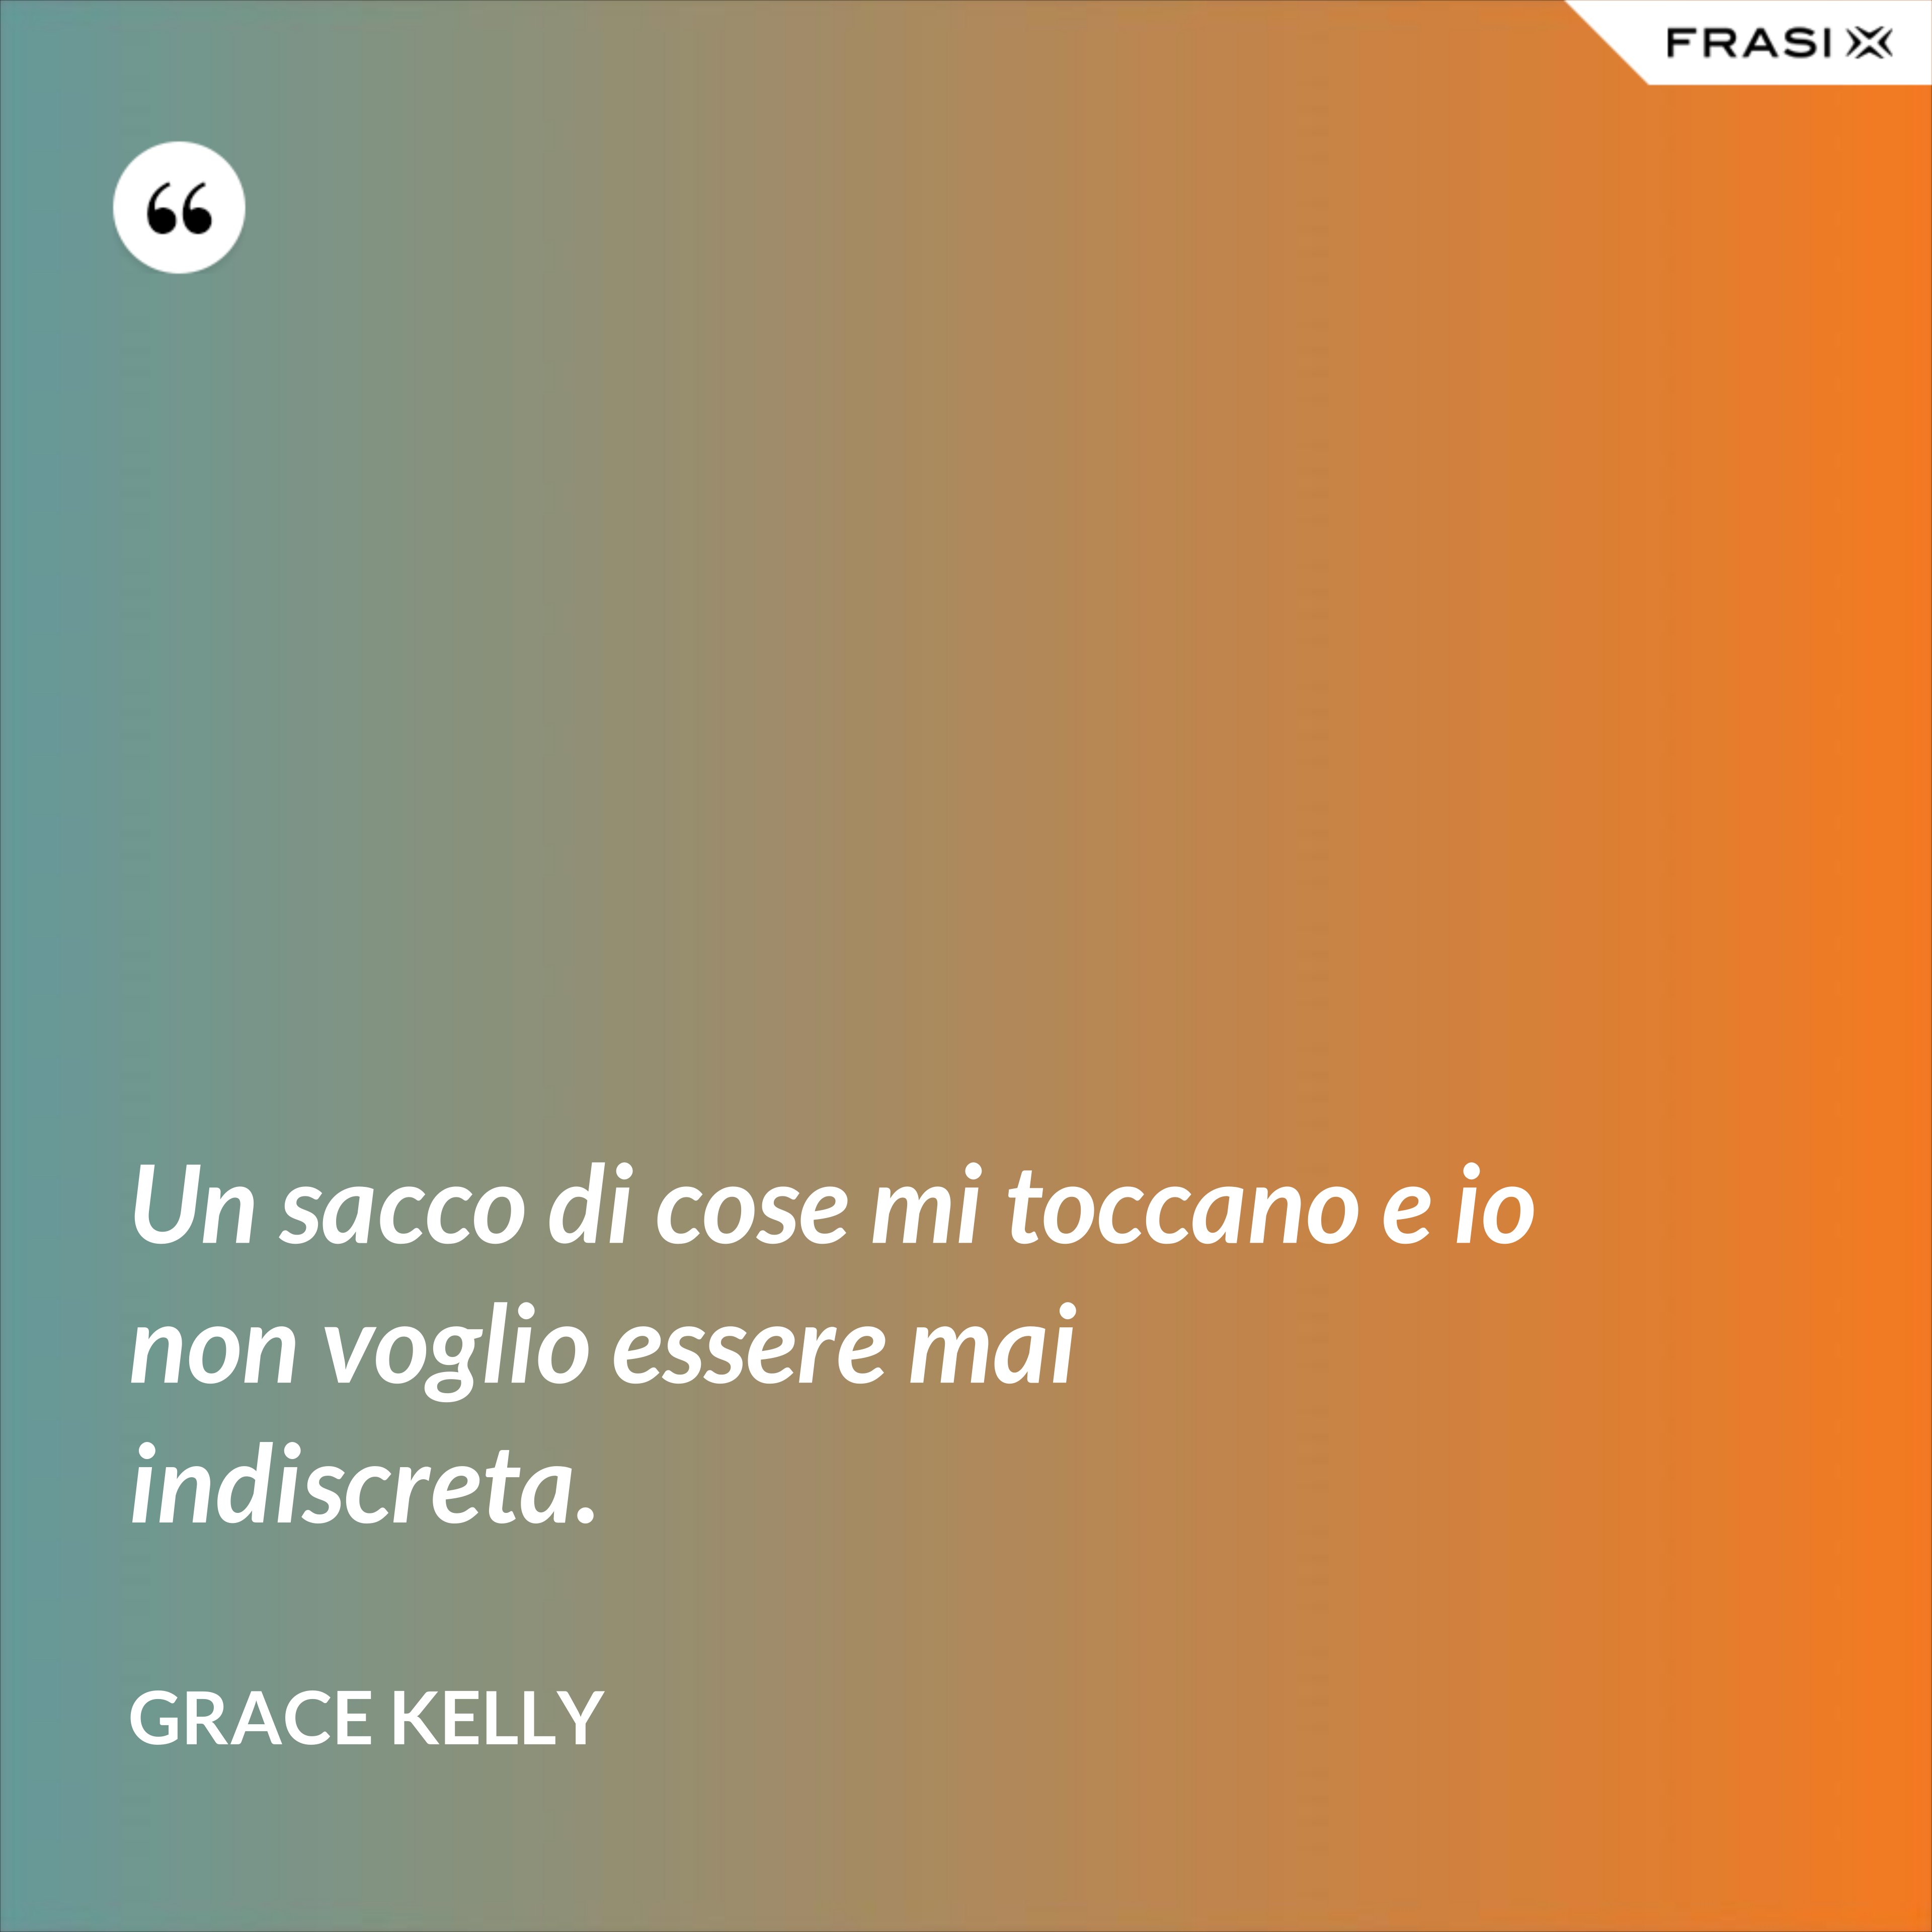 Un sacco di cose mi toccano e io non voglio essere mai indiscreta. - Grace Kelly